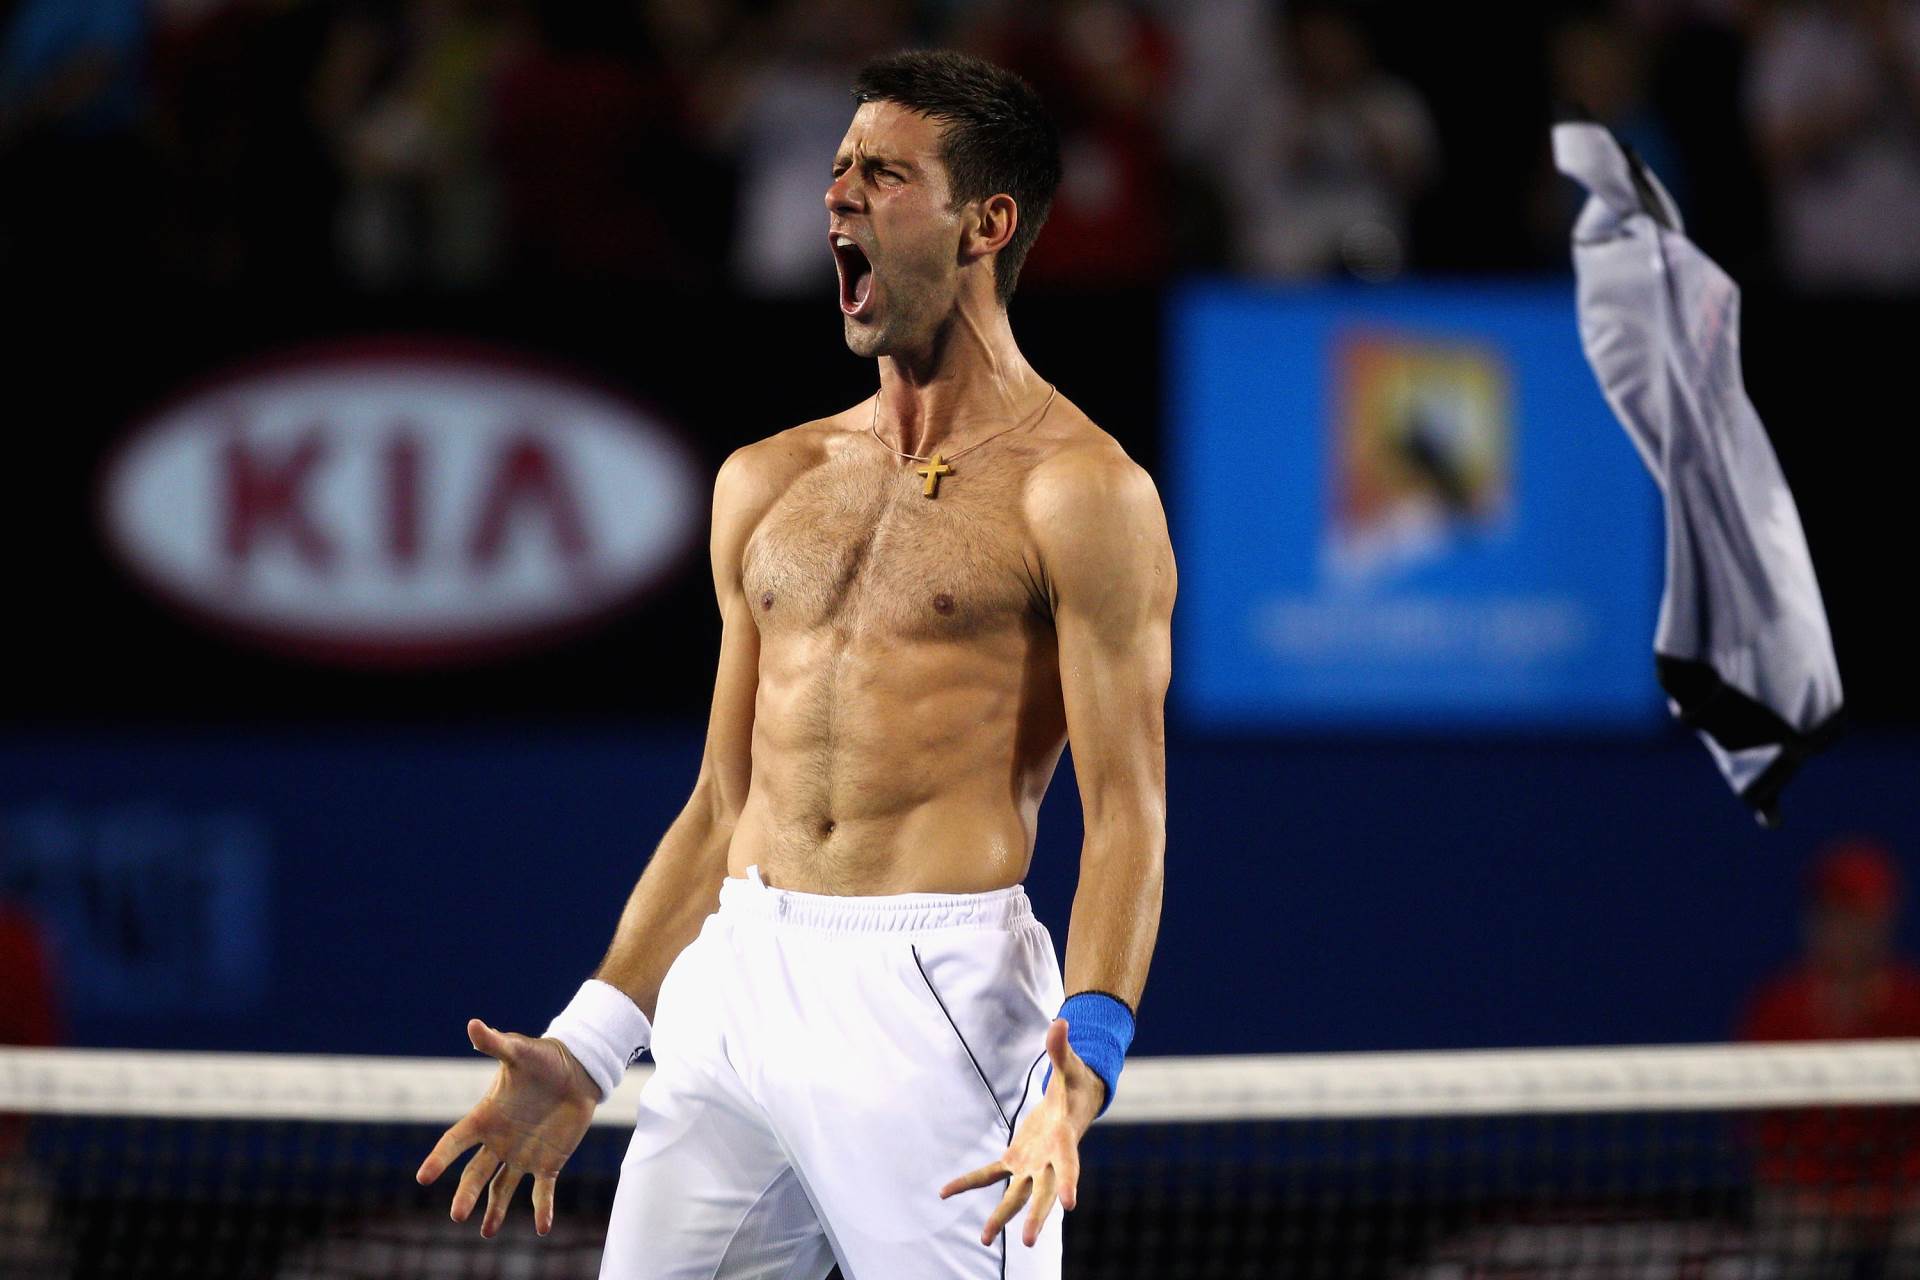  Novak-Djokovic-je-najbolji-teniser-velike-trojke-Rafael-Nadal-Rodzer-Federer-izjava-Pet-Kes 